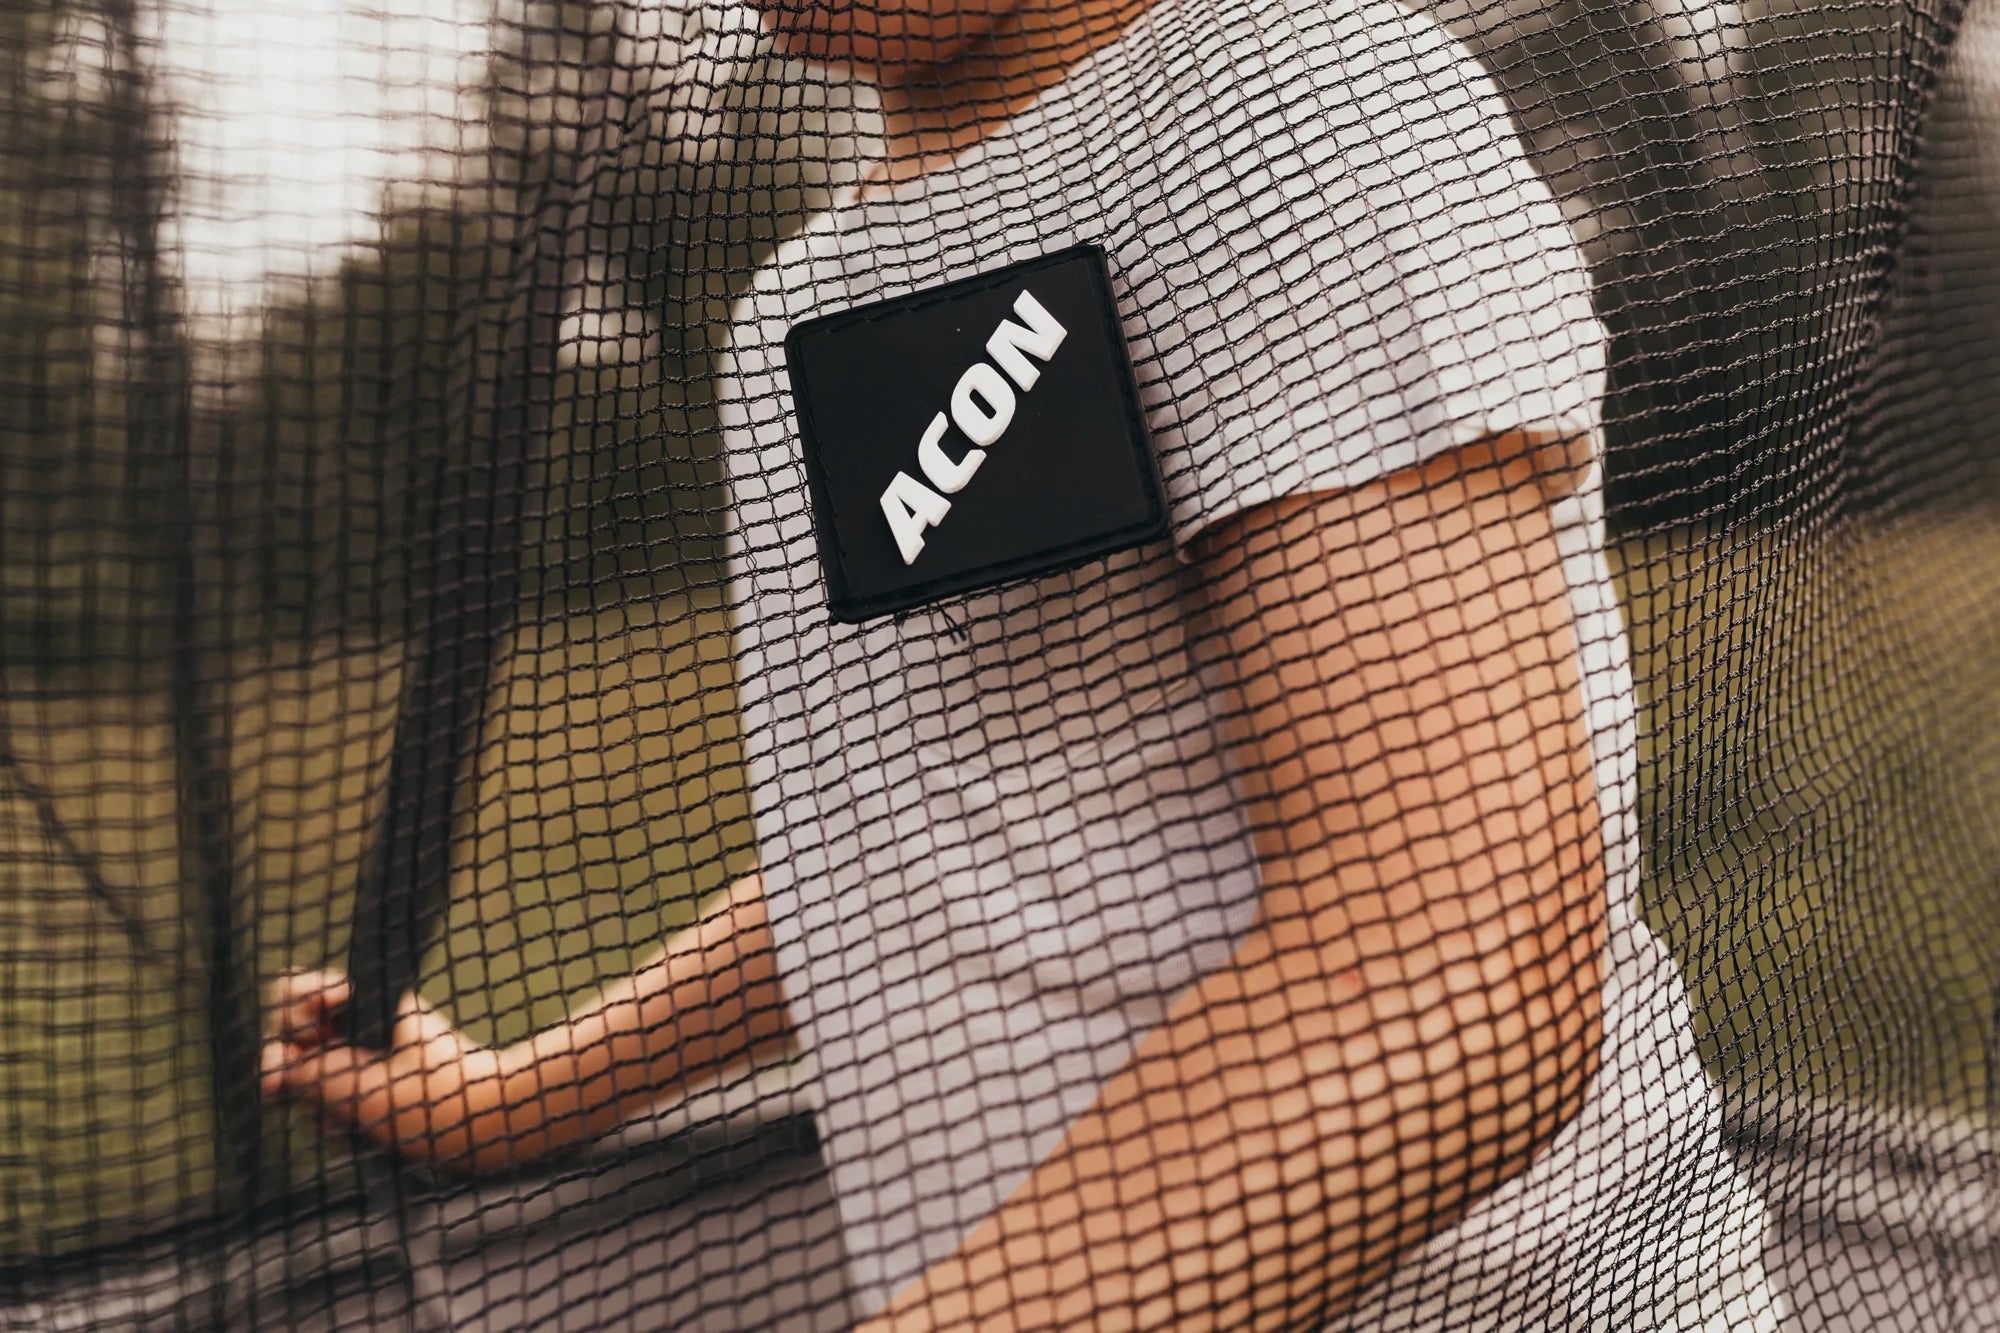 Un garçon portant un t-shirt blanc se tient derrière le filet de sécurité du trampoline sur lequel se trouve un logo ACON 